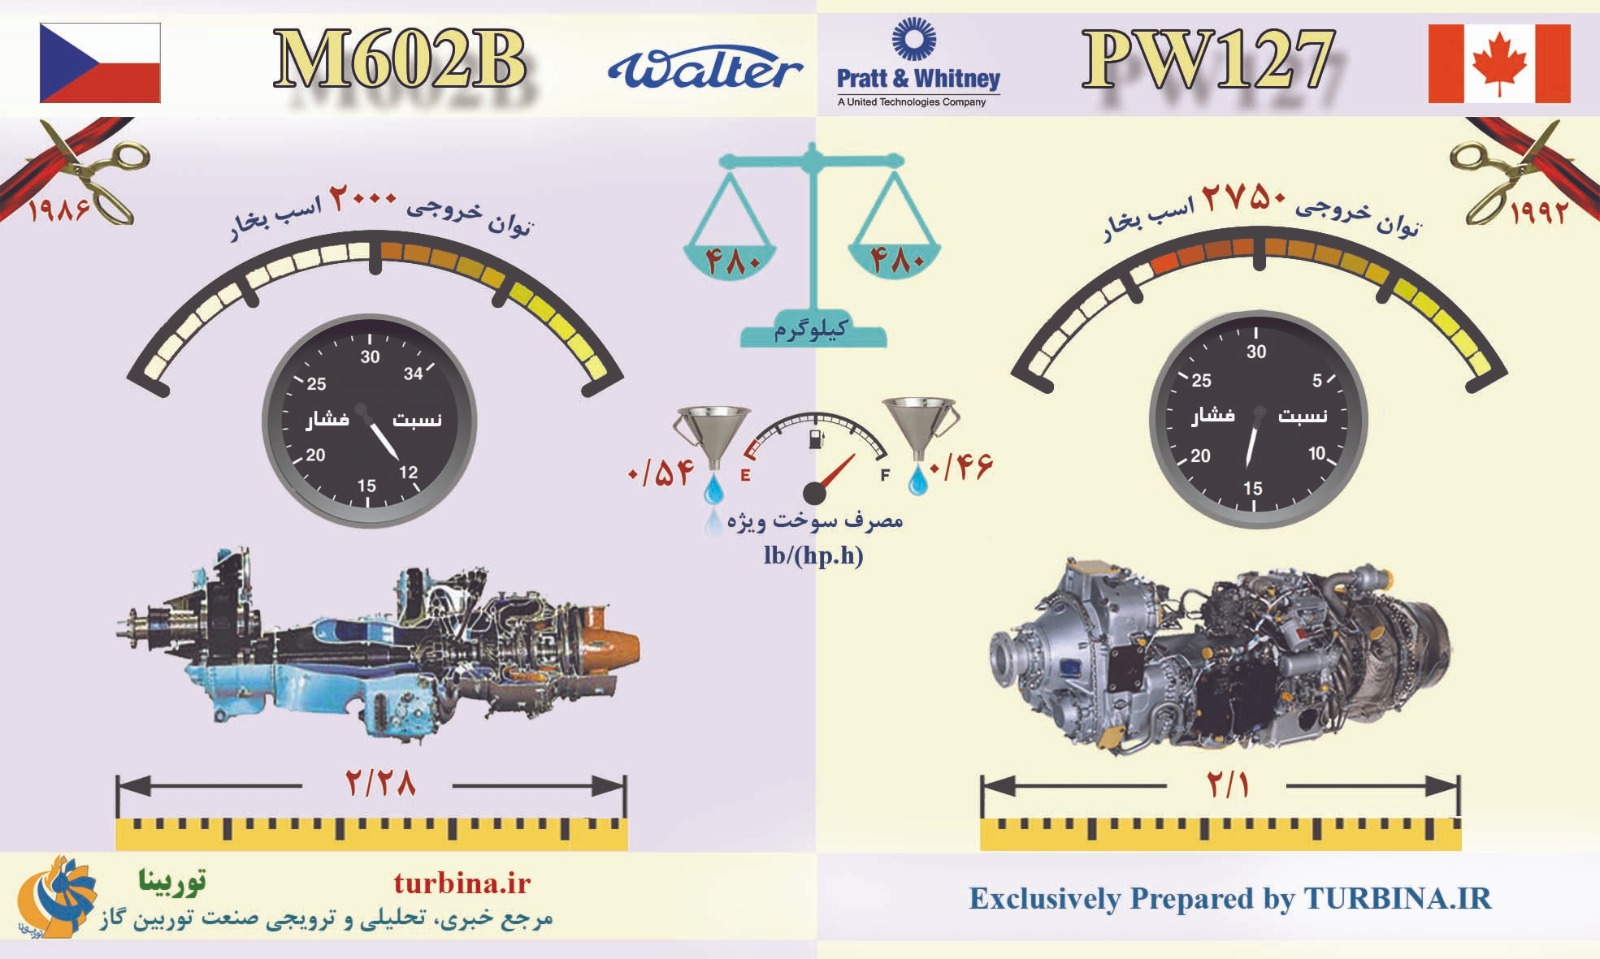 مقایسه موتورهای M602B و PW127